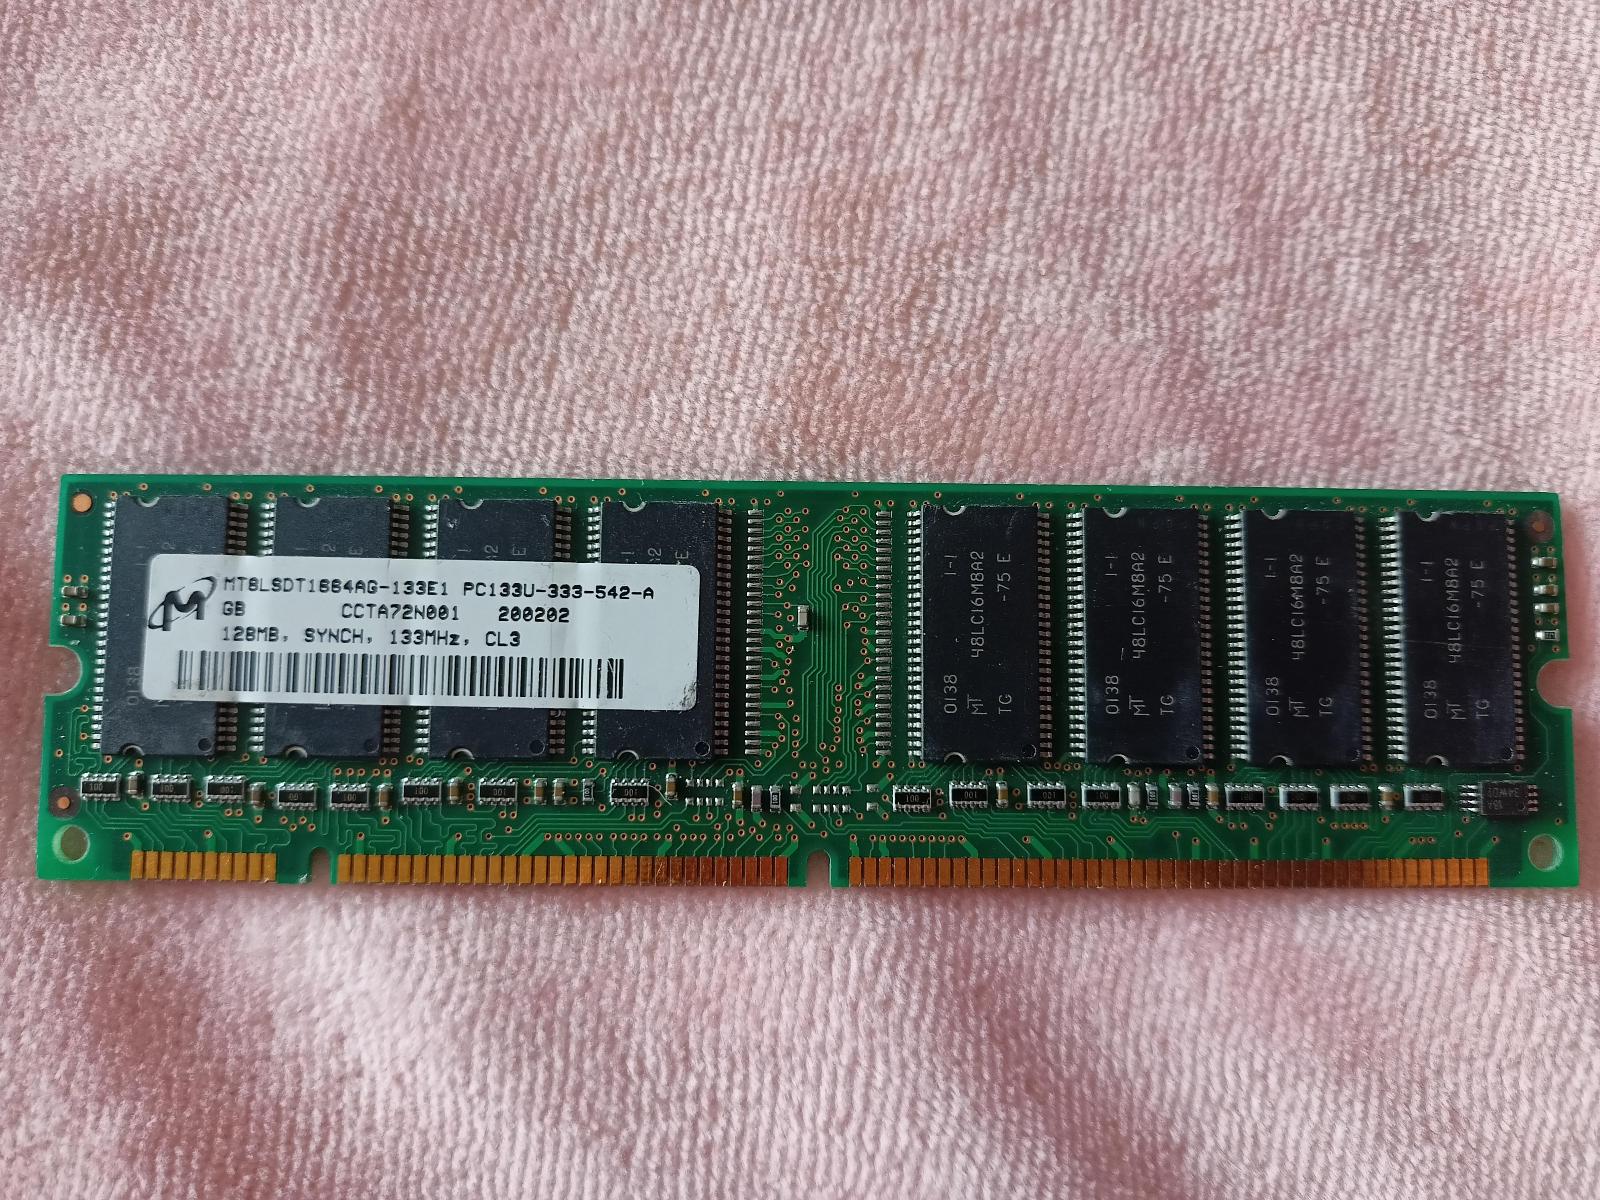 SDRAM - 128 MB / PC133  - Počítače a hry